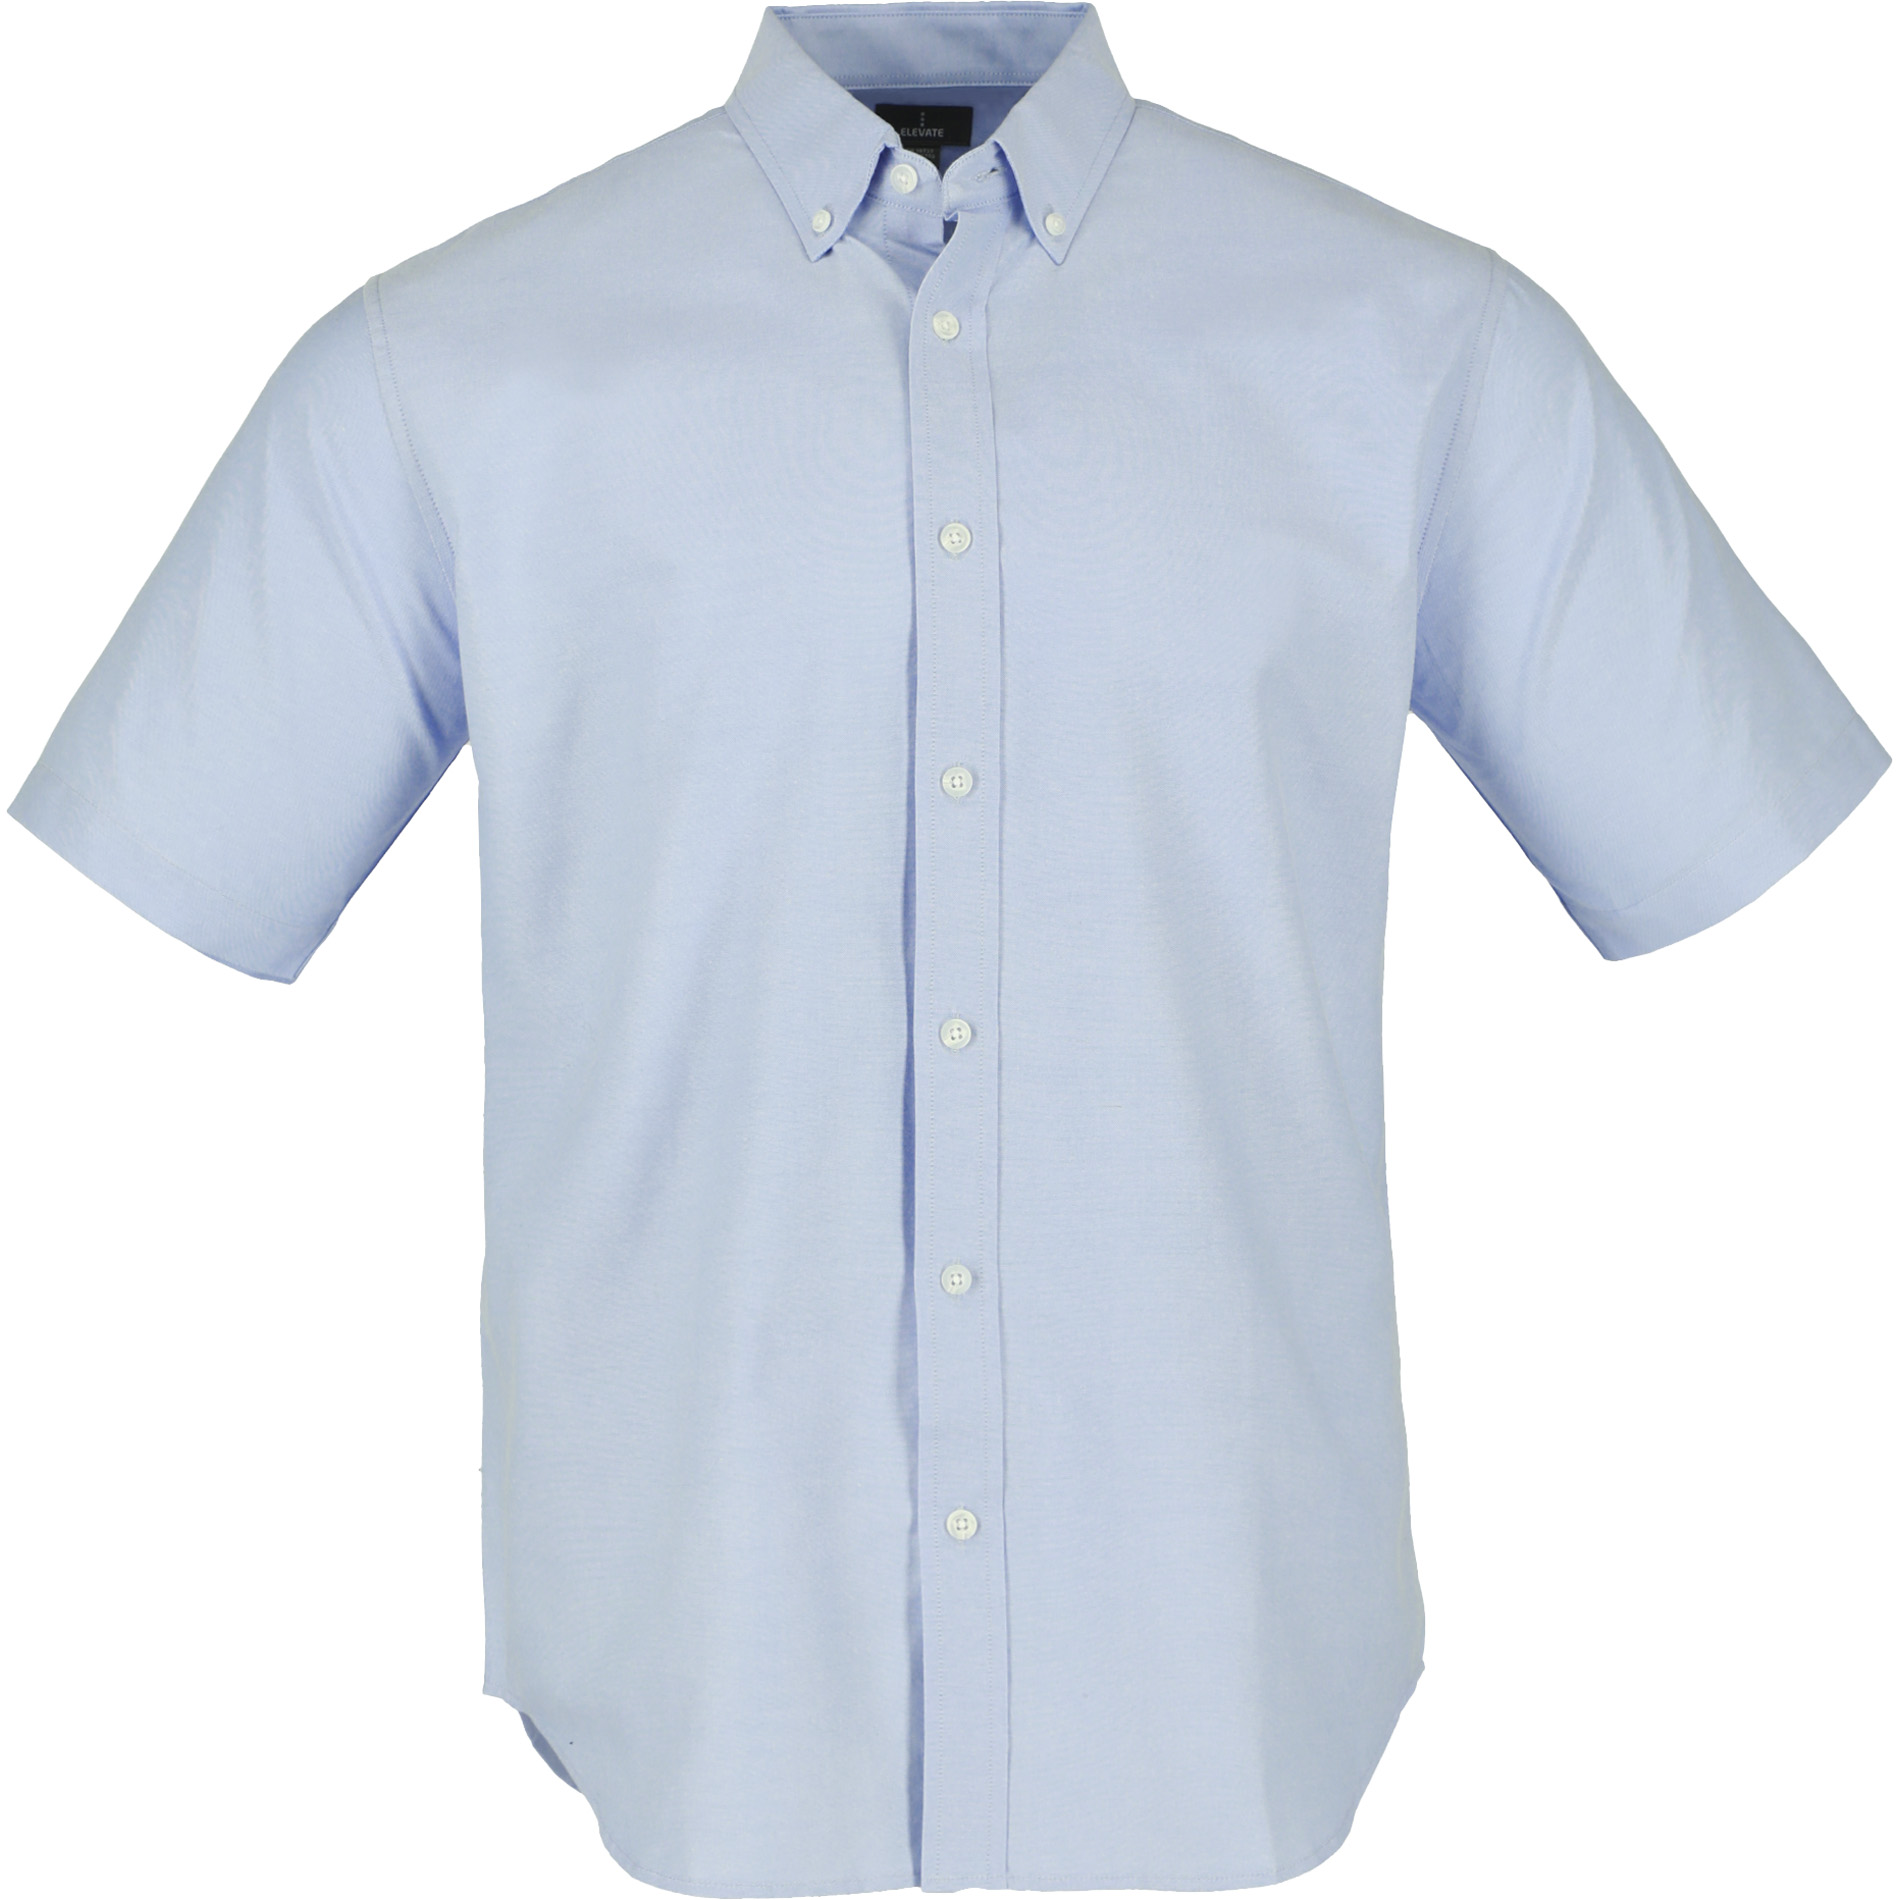 Trimark TM17702 - Men's SAMSON Oxford Short Sleeve Shirt $17.94 - Woven ...